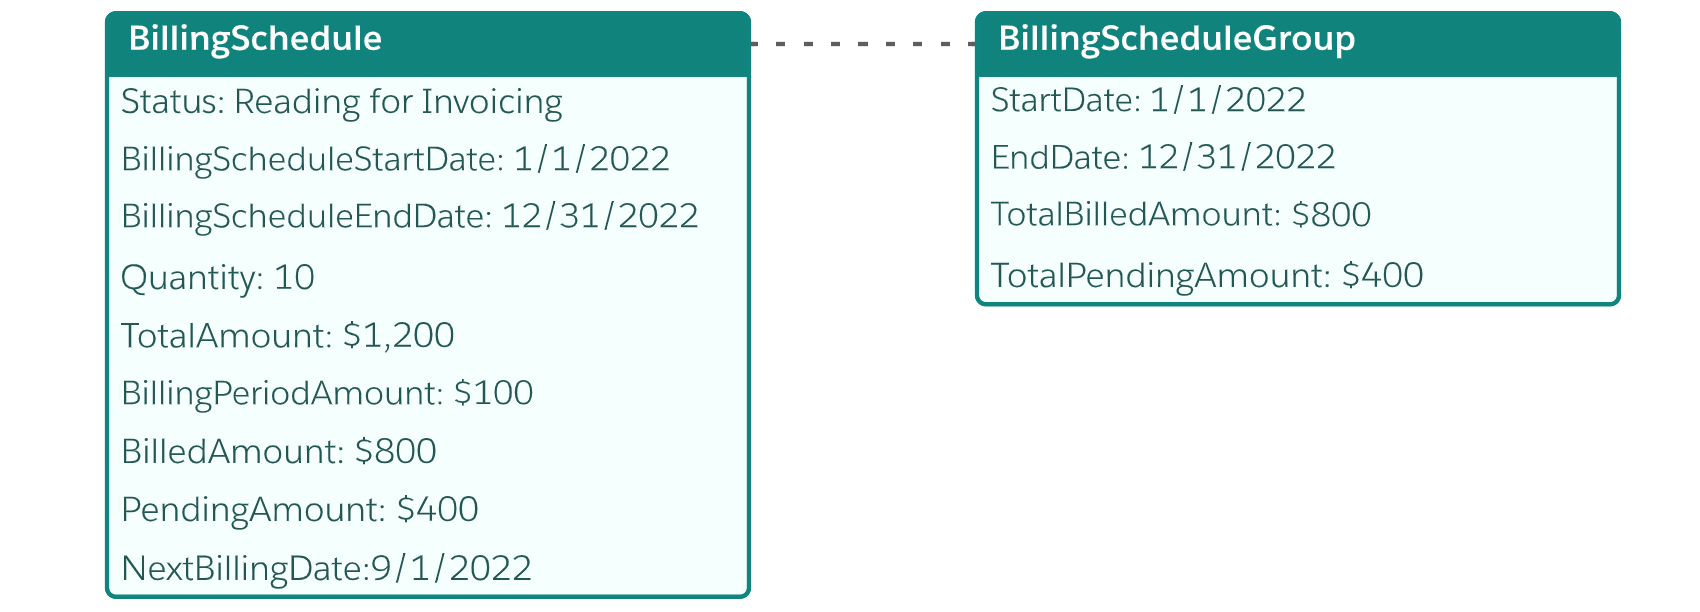 Initial billing schedule